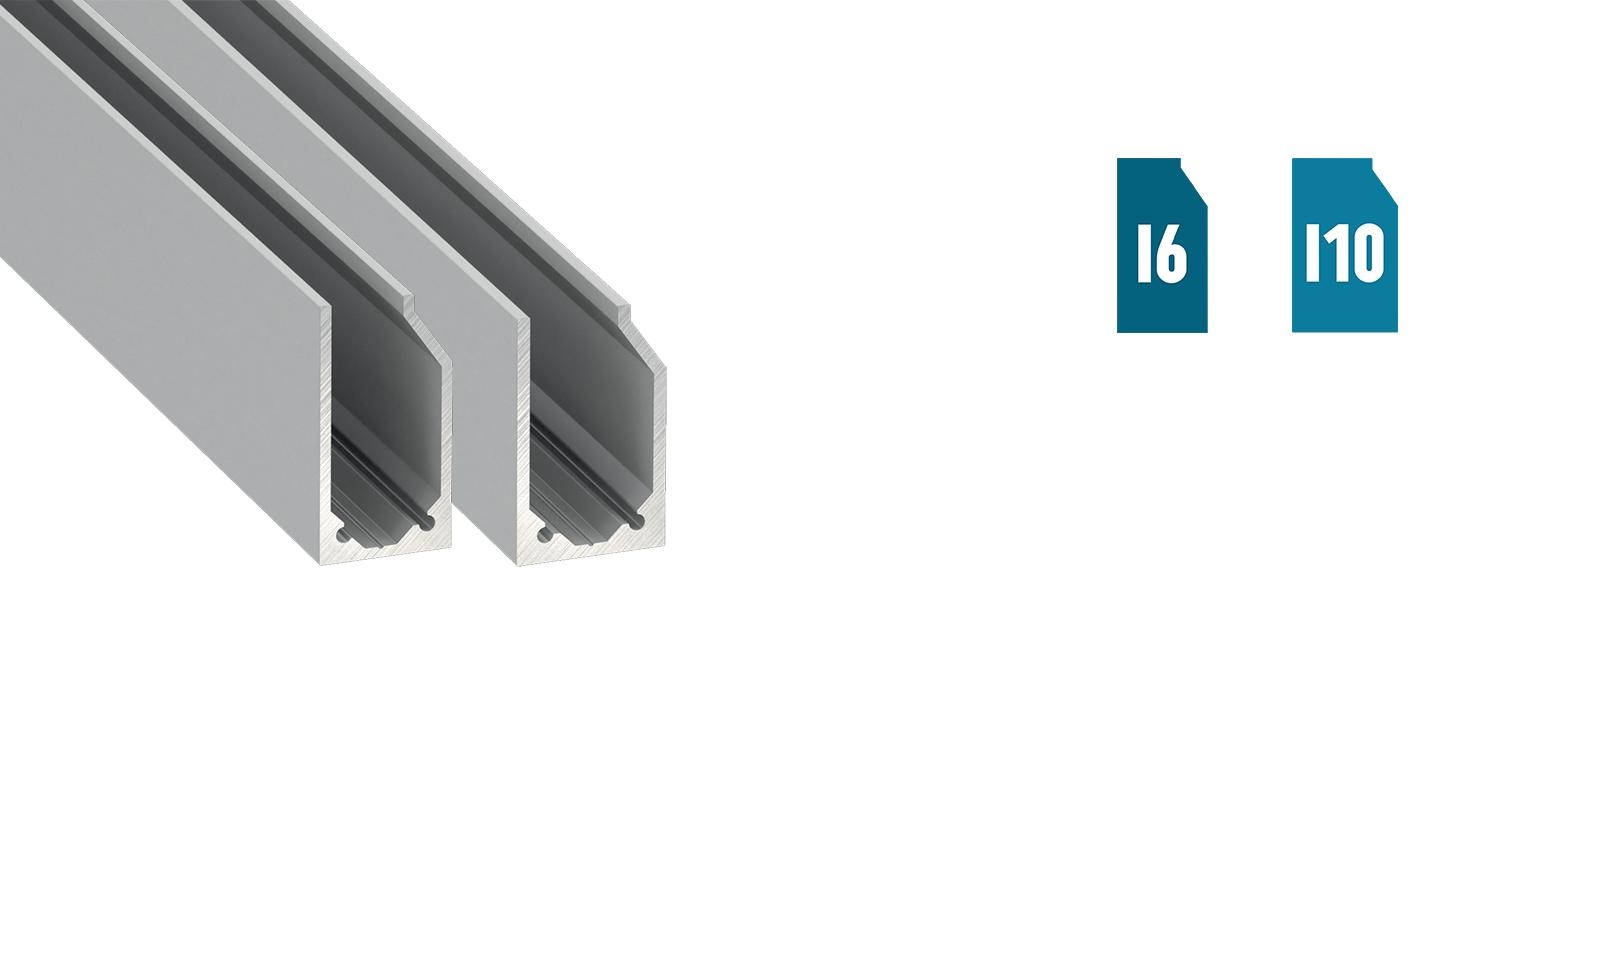 LUMINES I6 / I10 glass / plexi profile